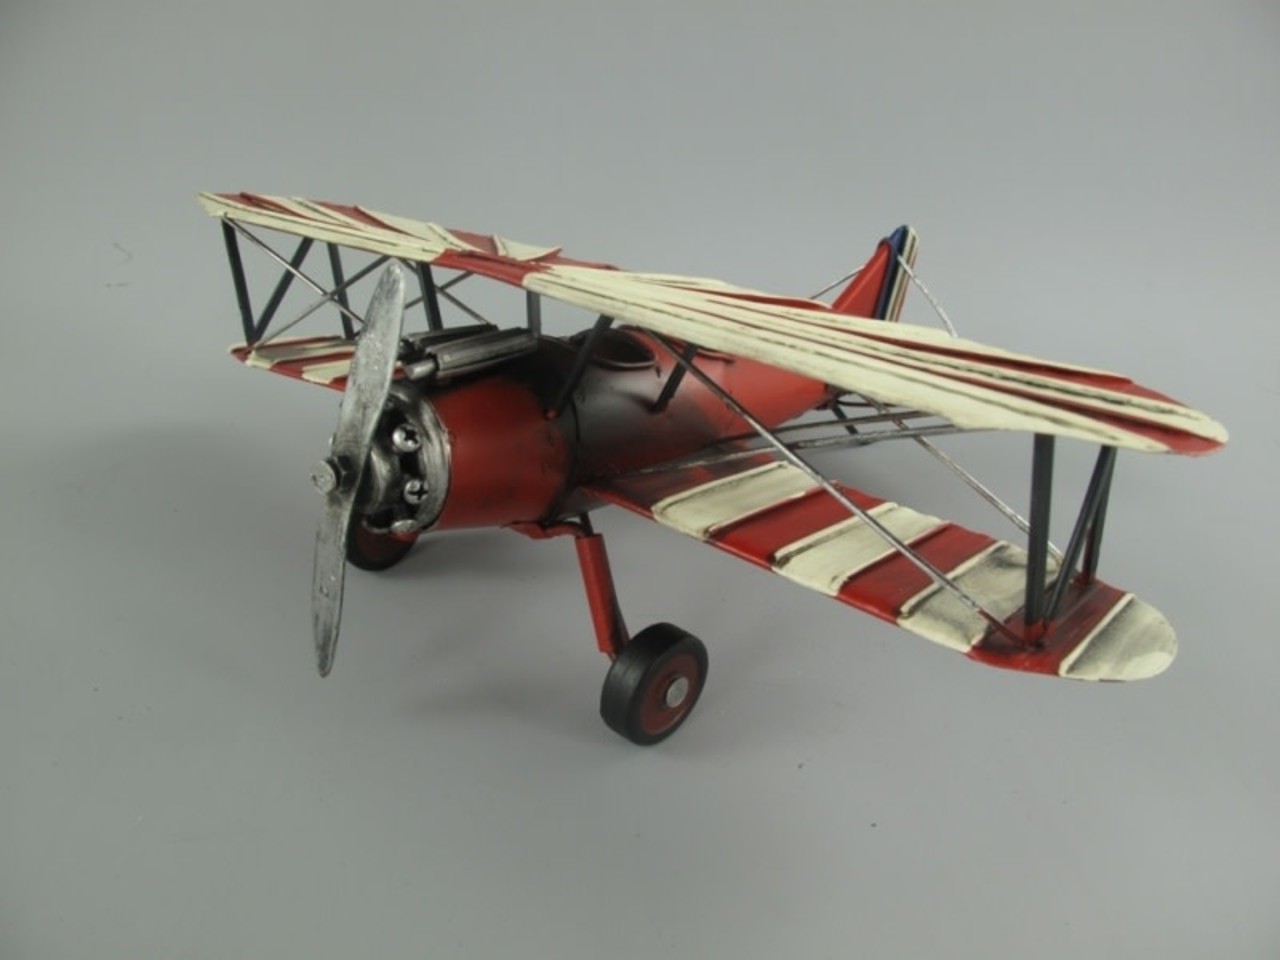 Leeg de prullenbak Beweren fenomeen Miniatuur model vliegtuig dubbeldekker | Eliassen - Eliassen Home & Garden  Pleasure